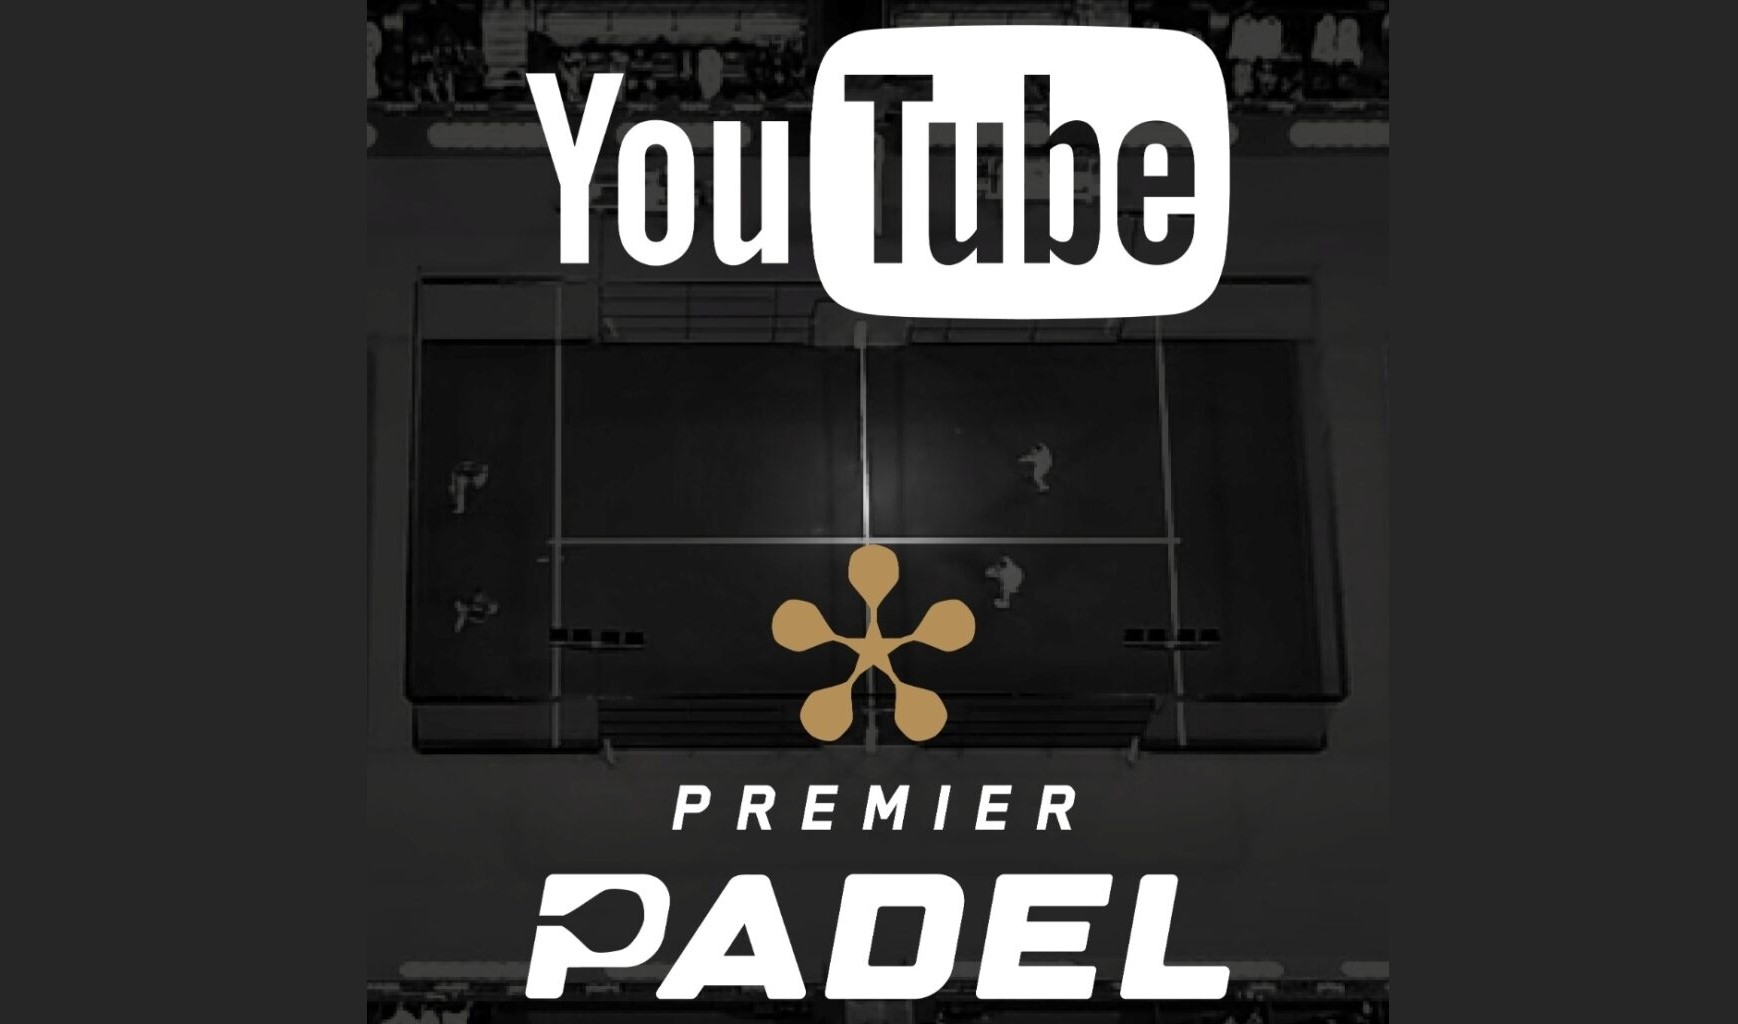 YouTube Premier Padel 2022 16 9